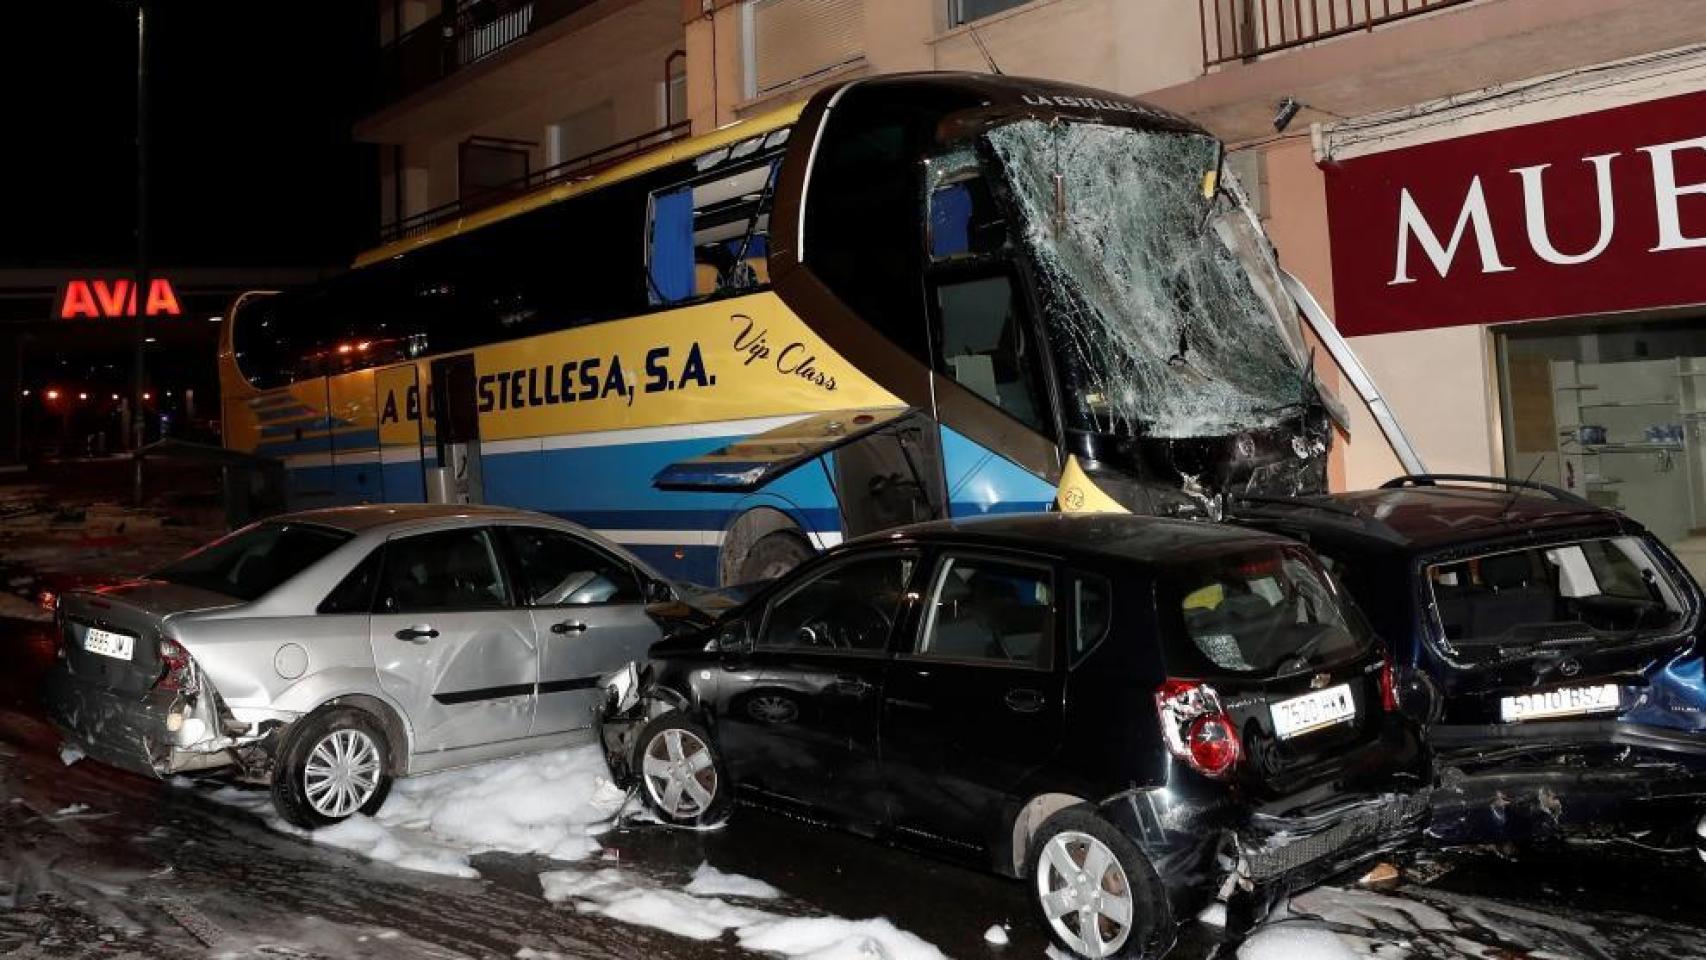 El autobús arrolló el coche en el que viajaban los menores junto a su madre, herida de gravedad.